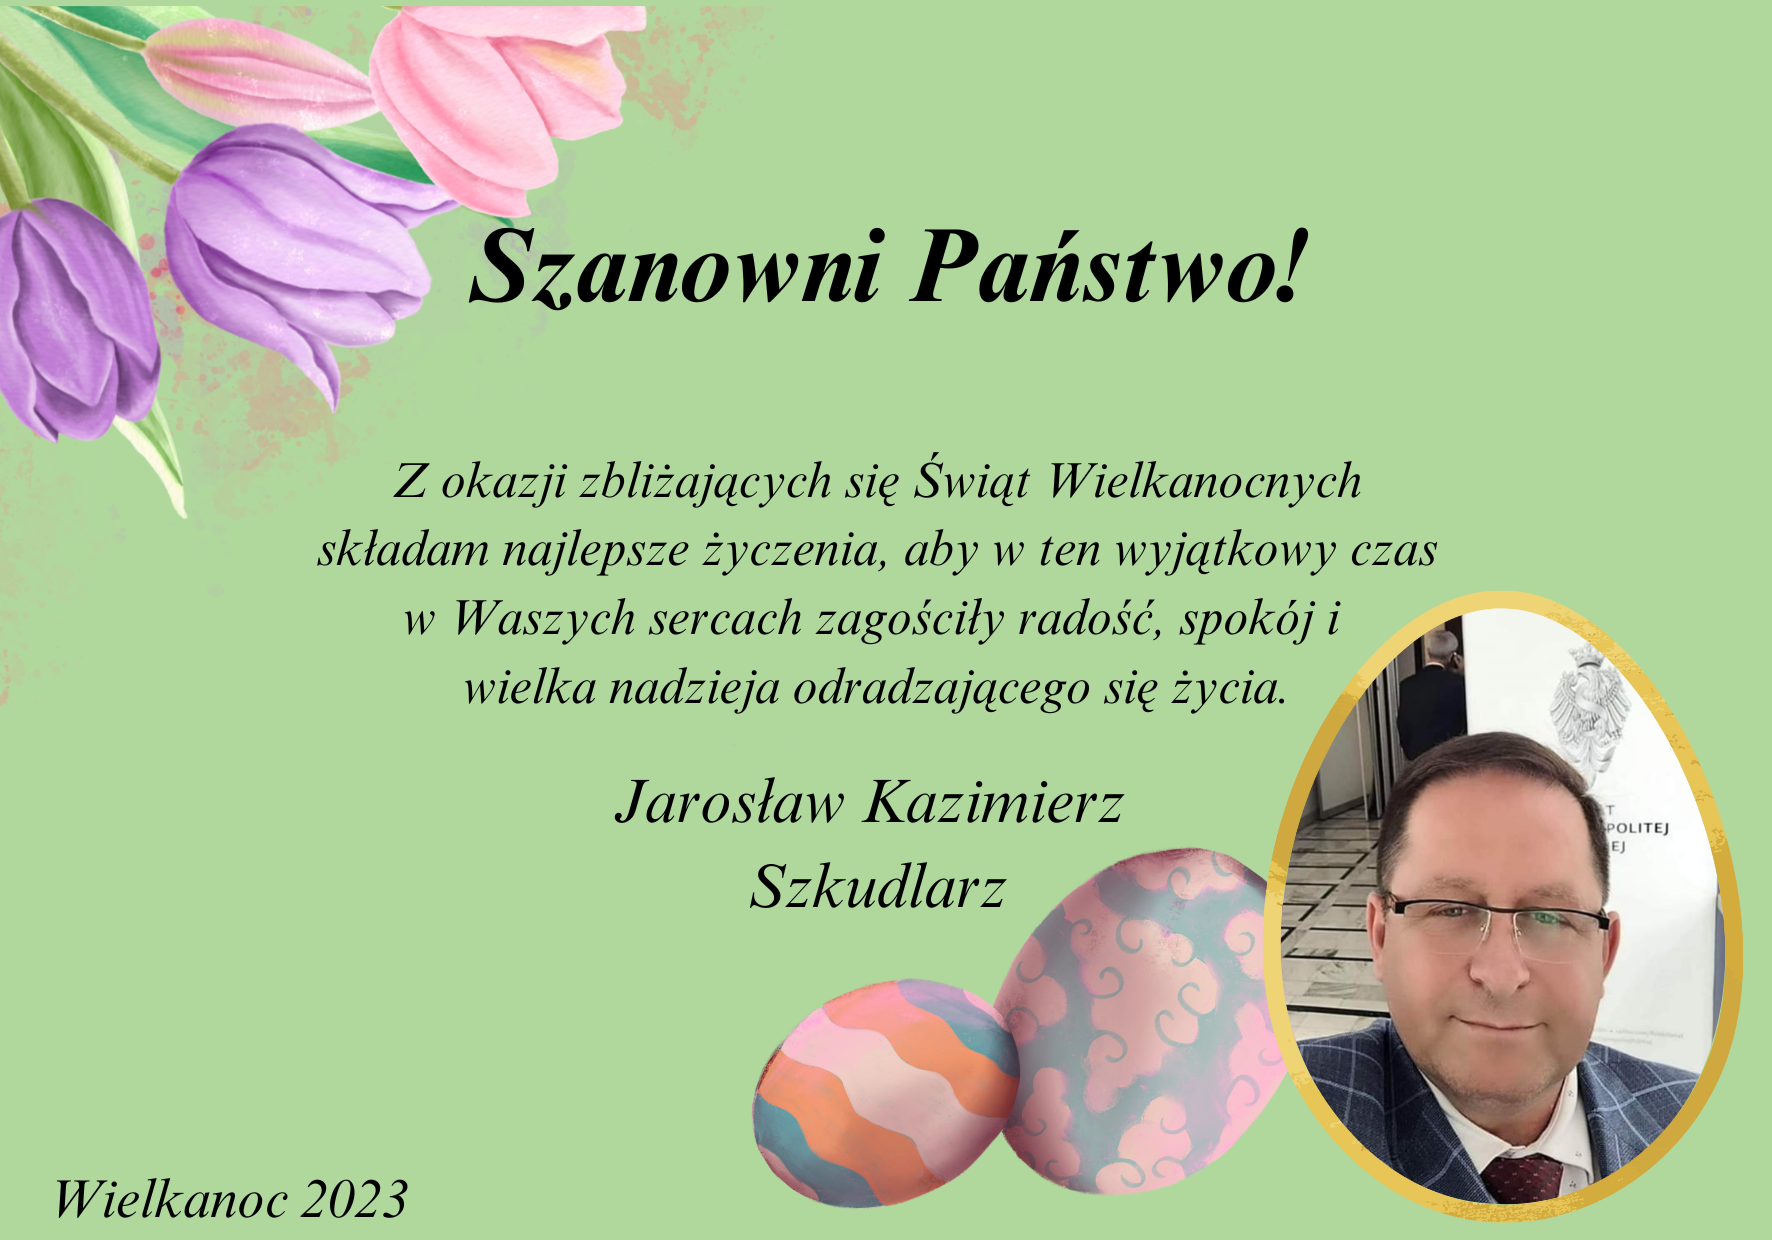 Życzenia Wielkanocne od P. Jarosława Kazimierza Szkudlarza